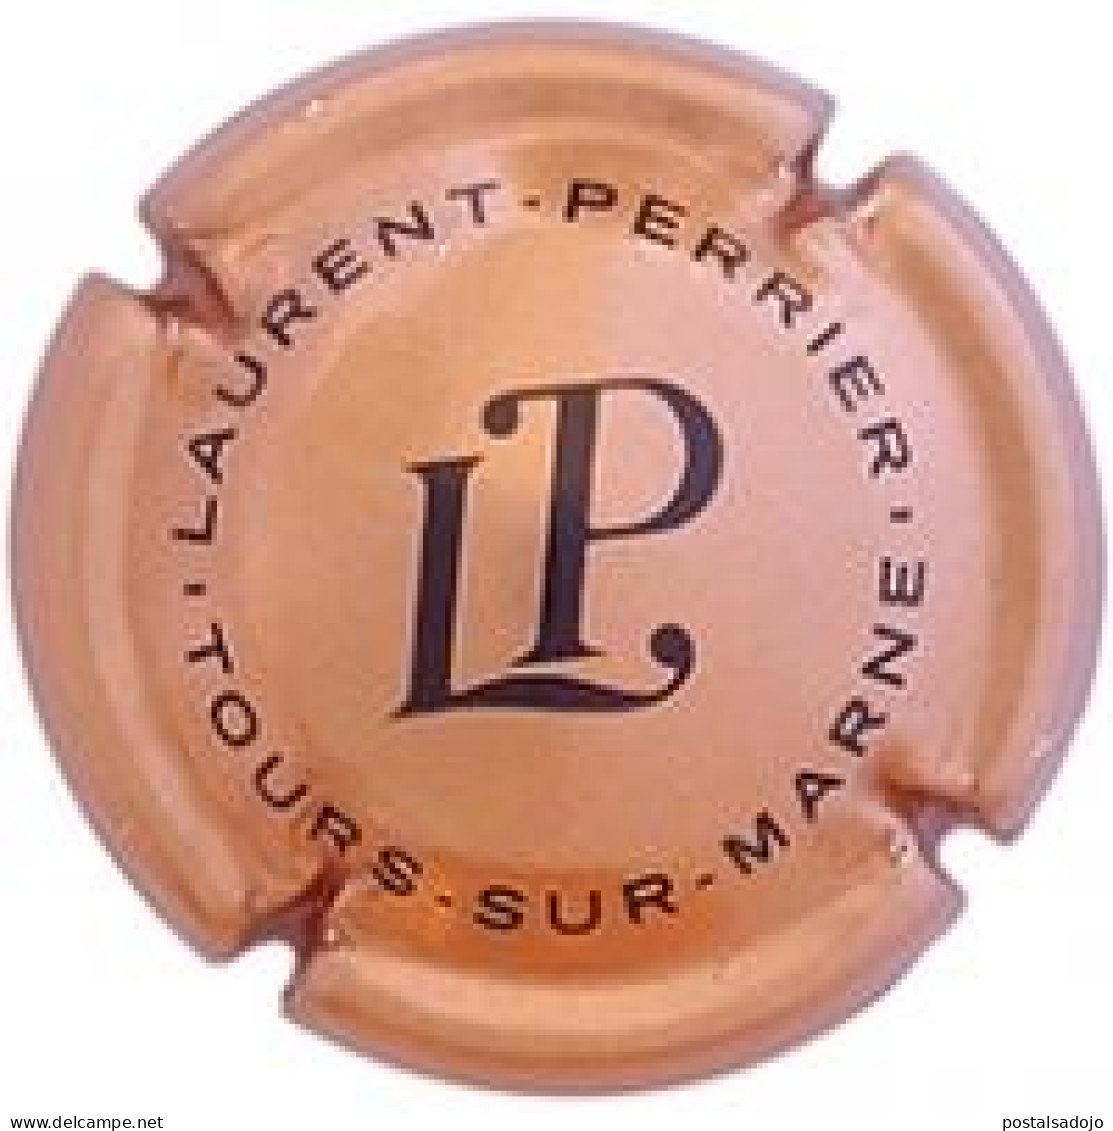 (62) PLACA. CAPSULE CHAMPAGNE -  LAURENT PERRIER -  LAMBERT 58b - Laurent-Perrier